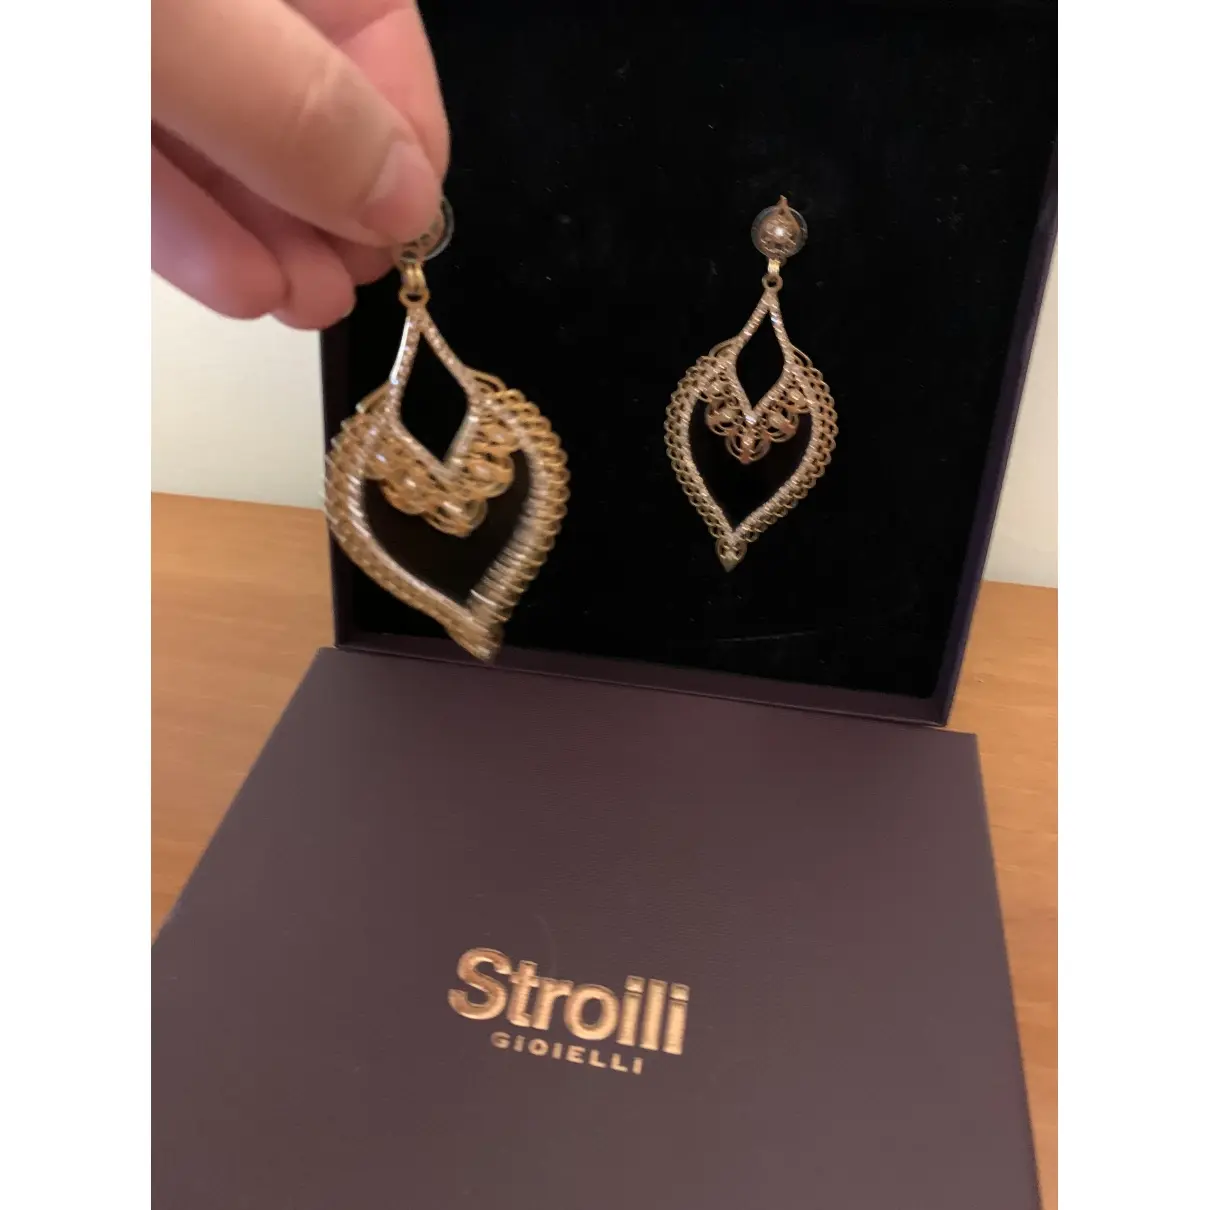 Buy Stroili Earrings online